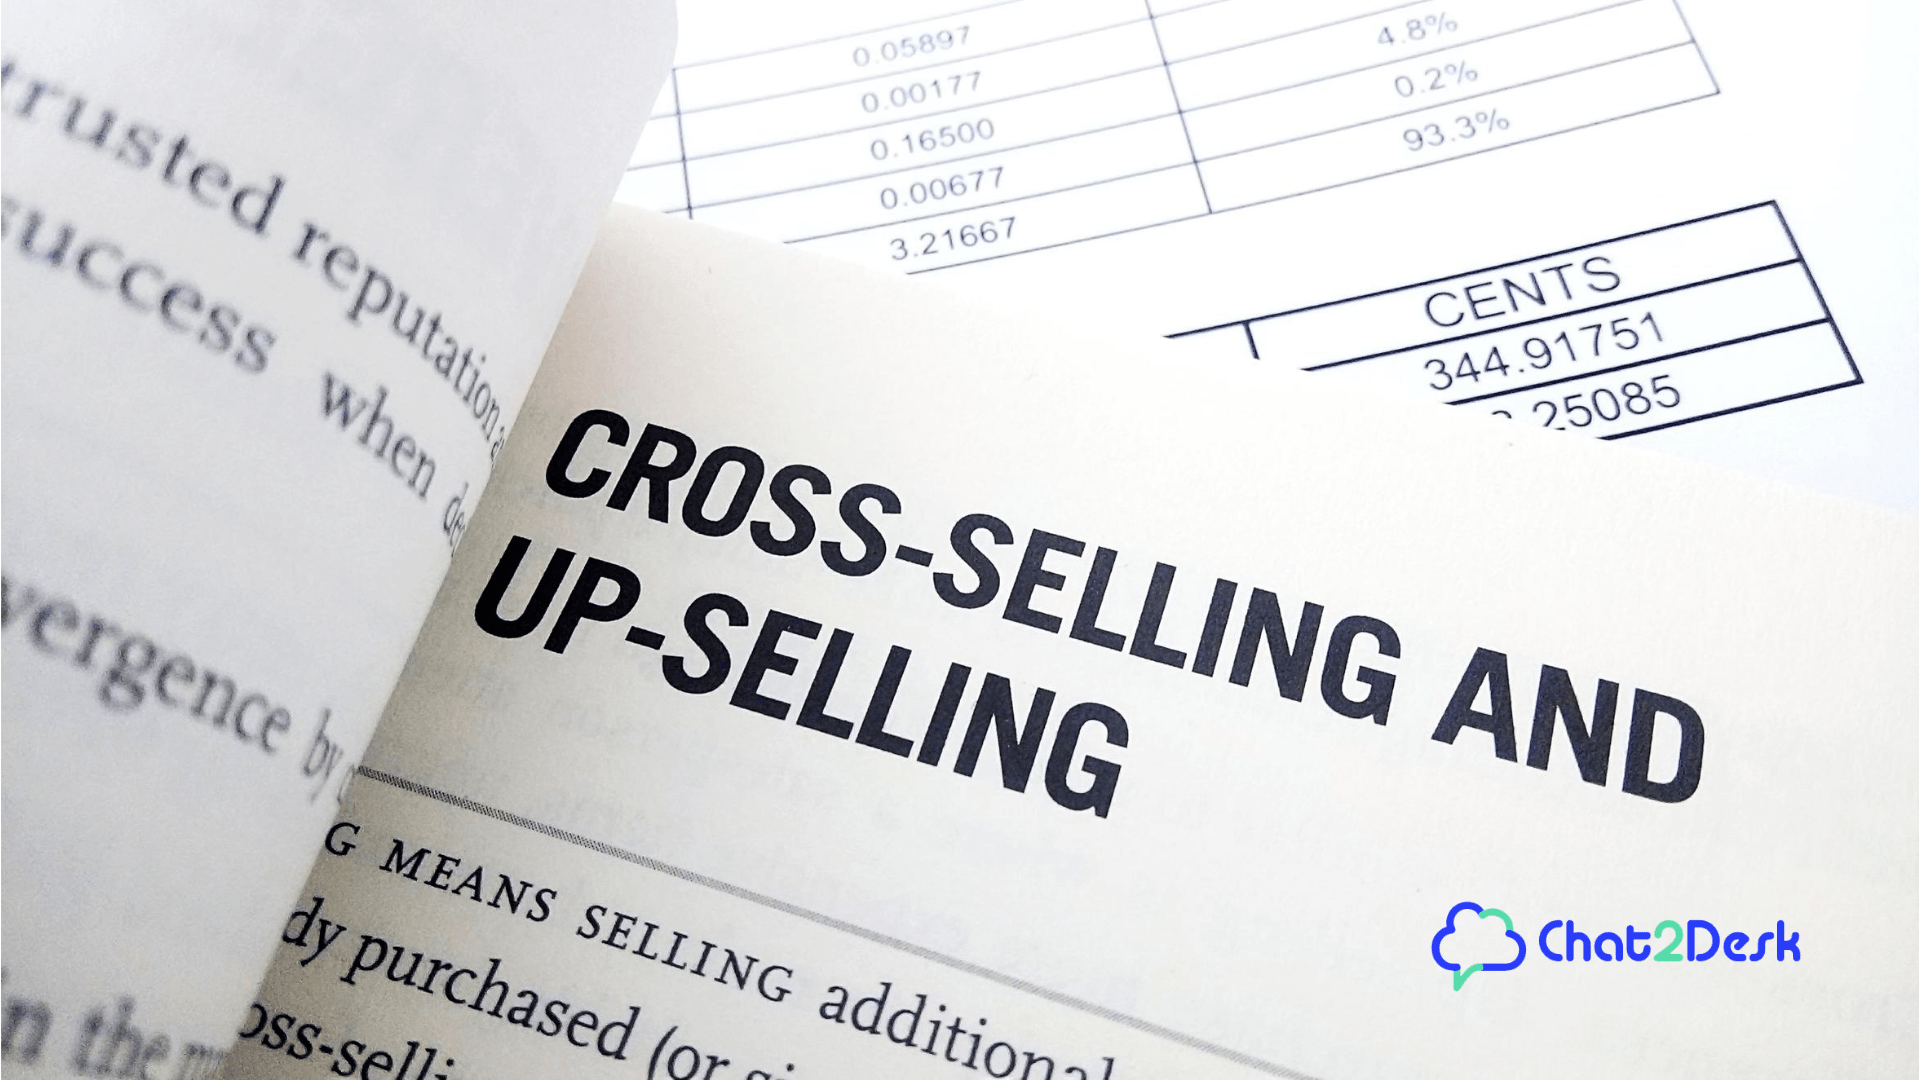 Conteúdo sobre estratégia de vendas: up sell, cross sell e down sell